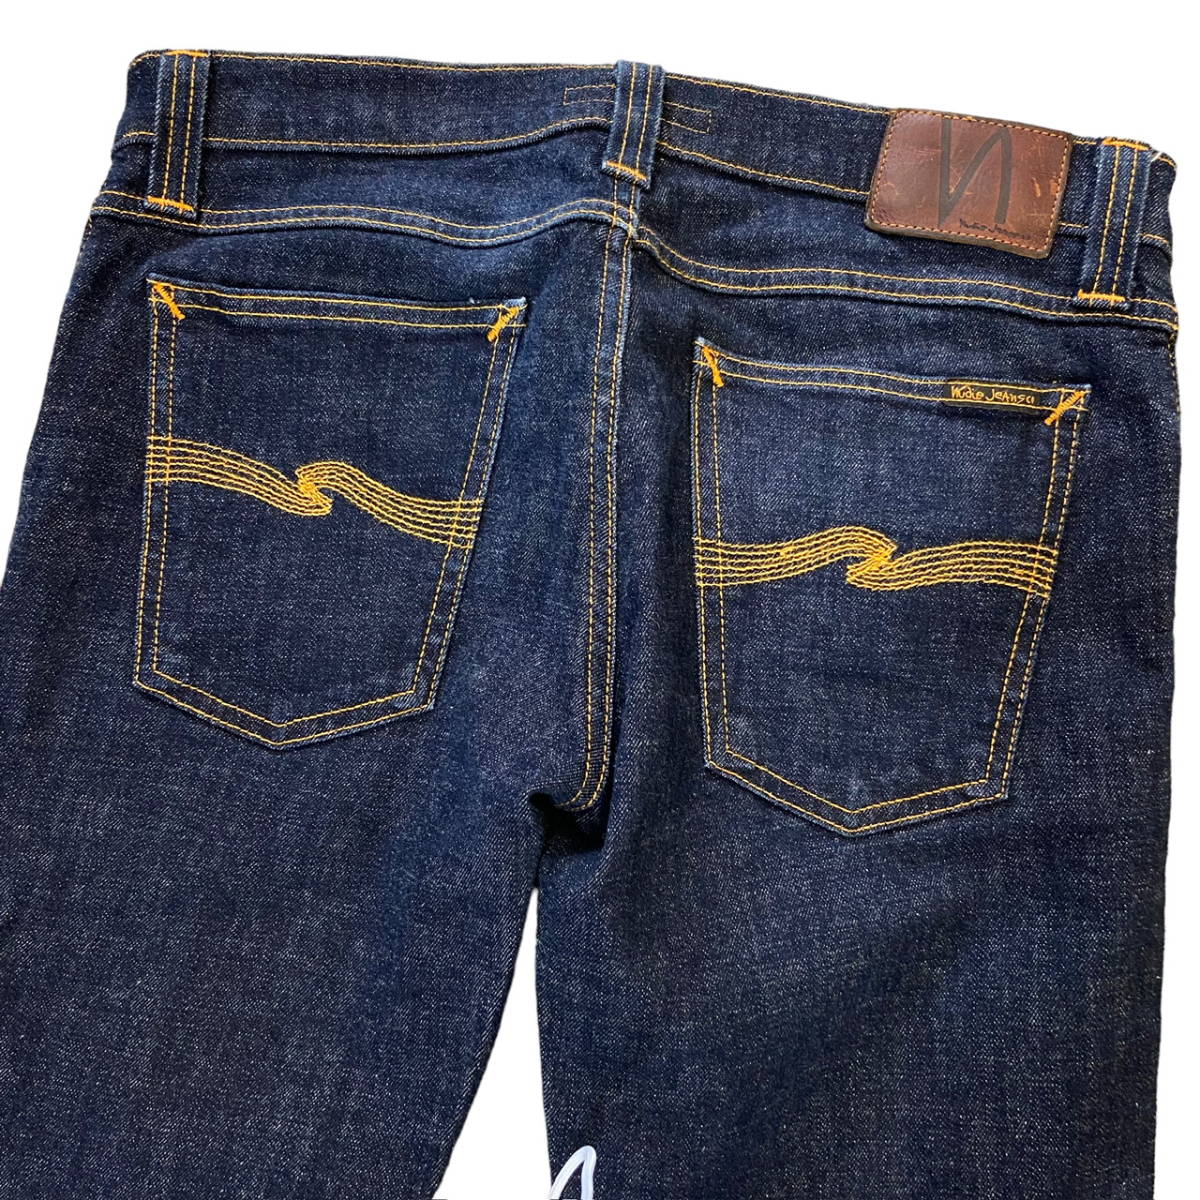 イタリア製 Nudie Jeans デニム パンツ W31 L32 ヌーディー ジーンズ ストレッチ スリム ストレート スキニー Made in ITALY オーガニック